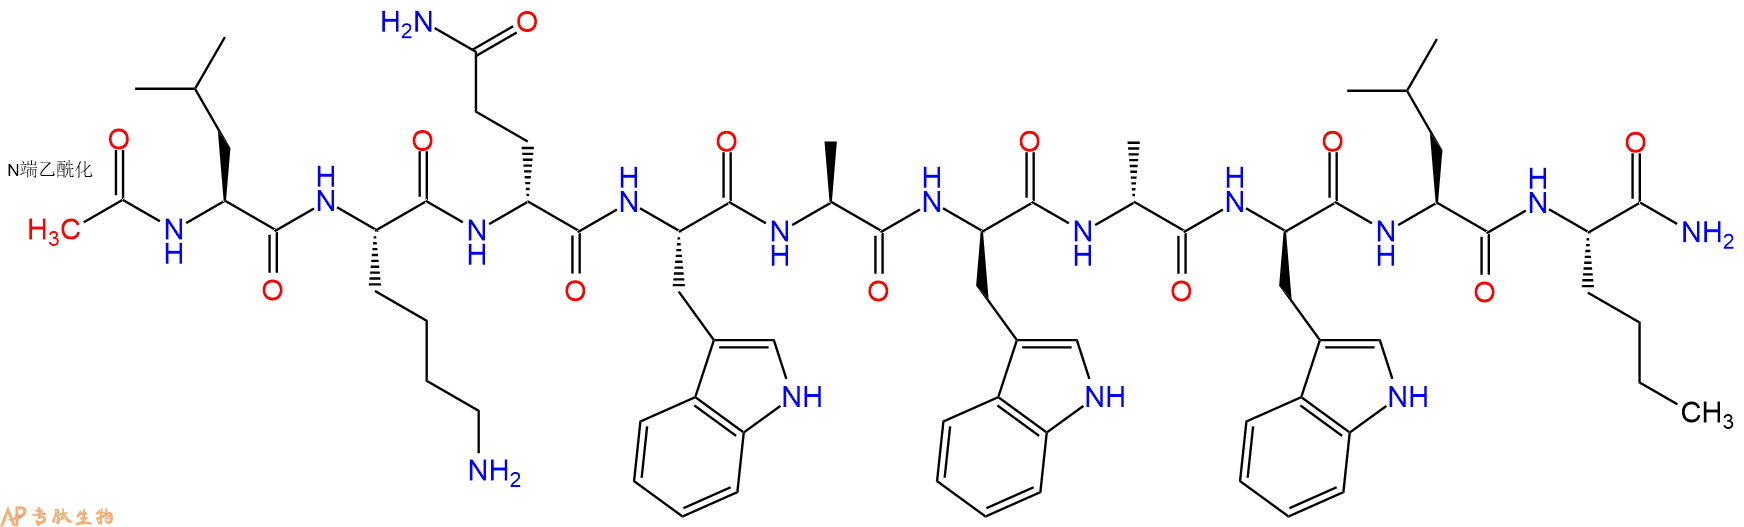 专肽生物产品Ac-L-Lys-DGln-Trp-Ala-DTrp-DAla-DTrp-Leu-Nle-NH2